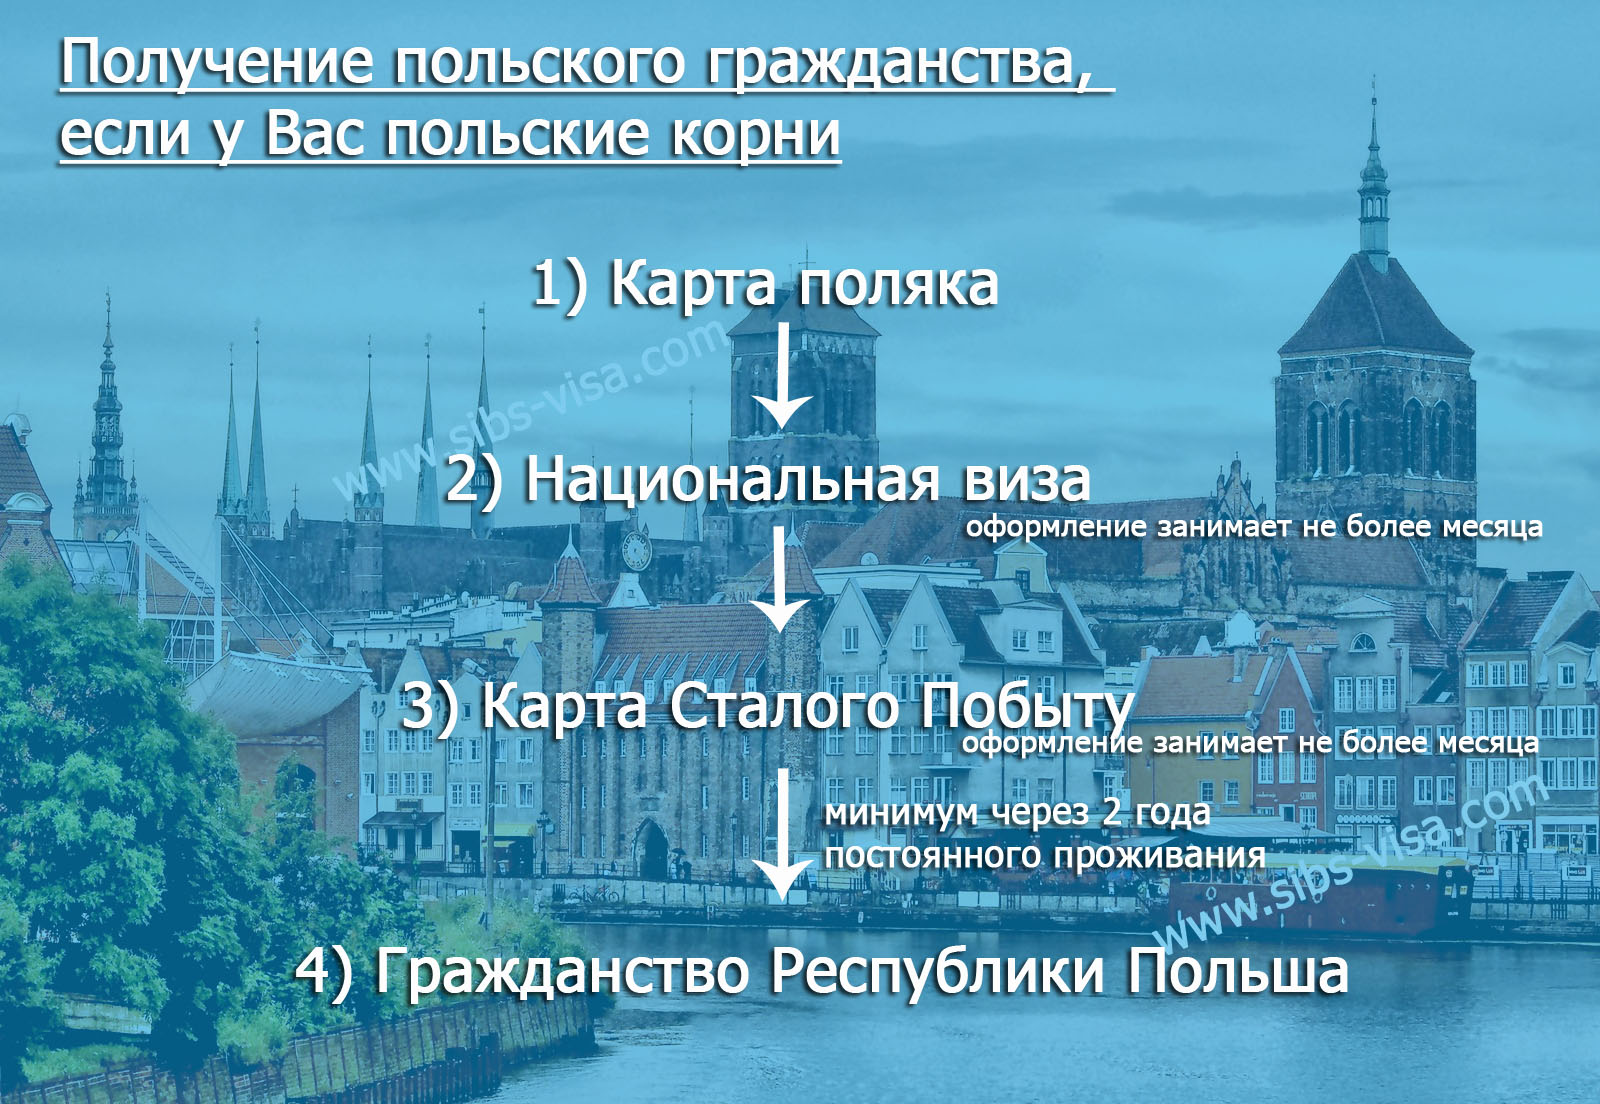 Получение польского гражданства на основании карты поляка